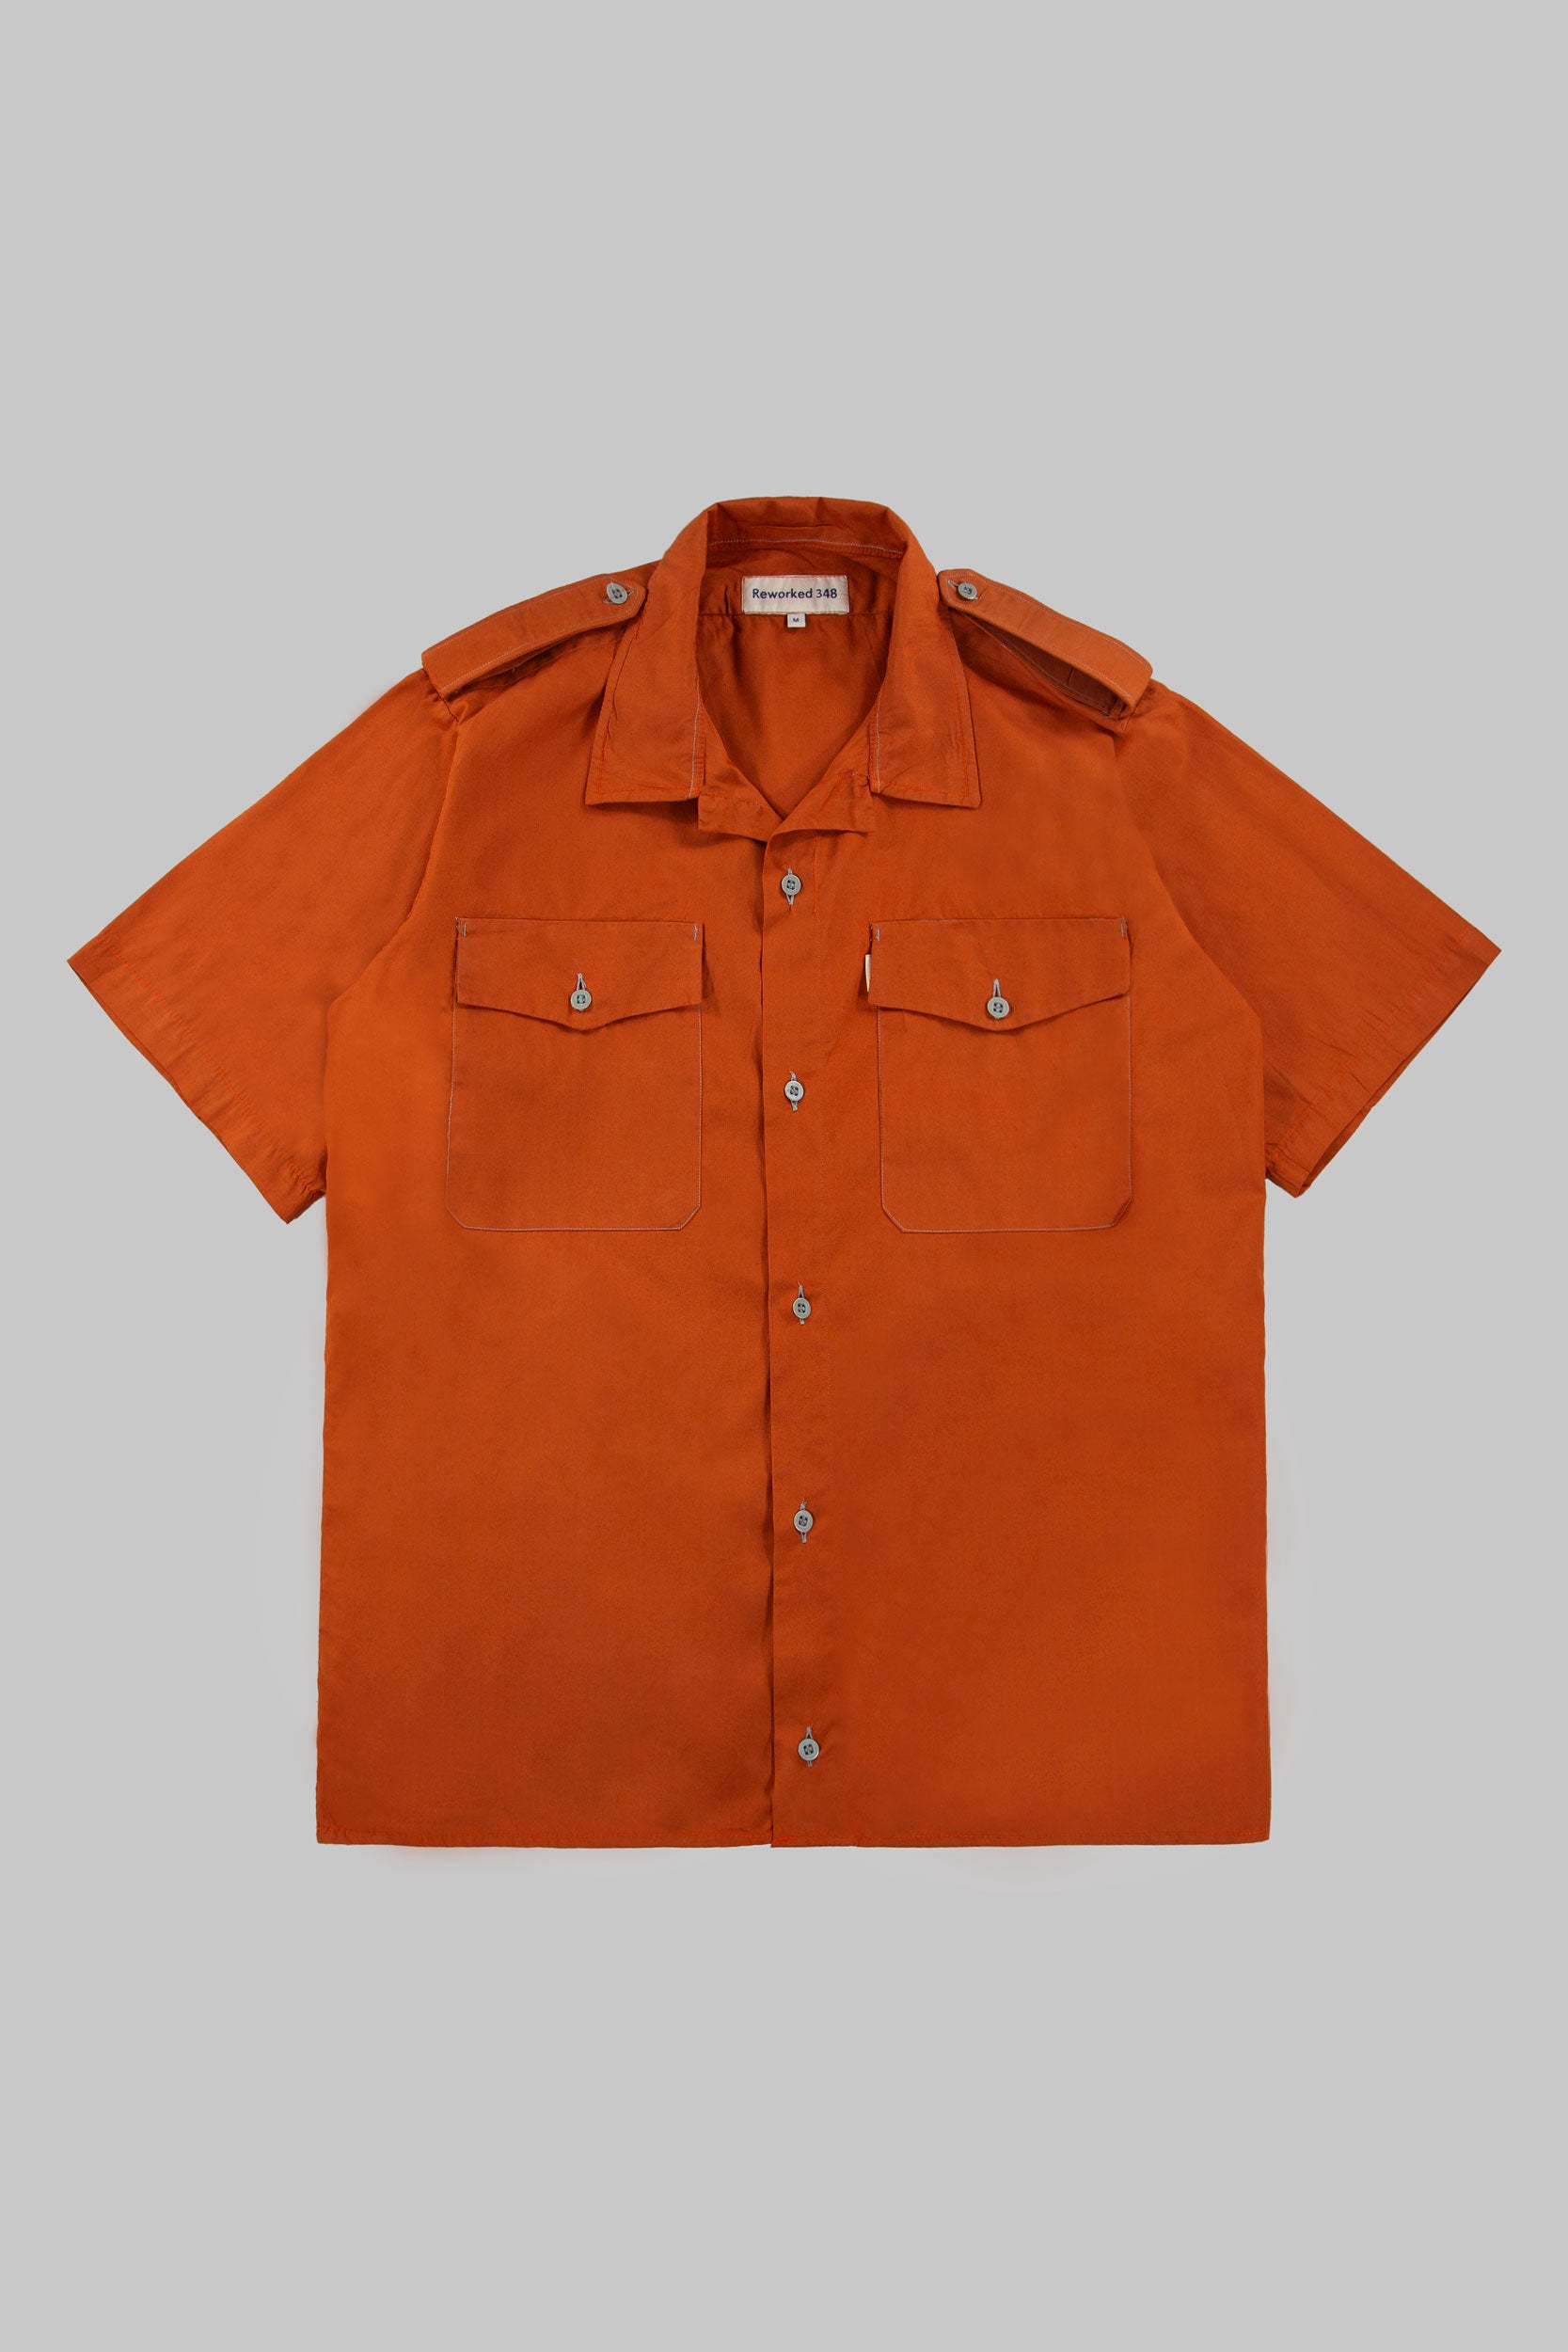 Tripps Shirt Mute Orange